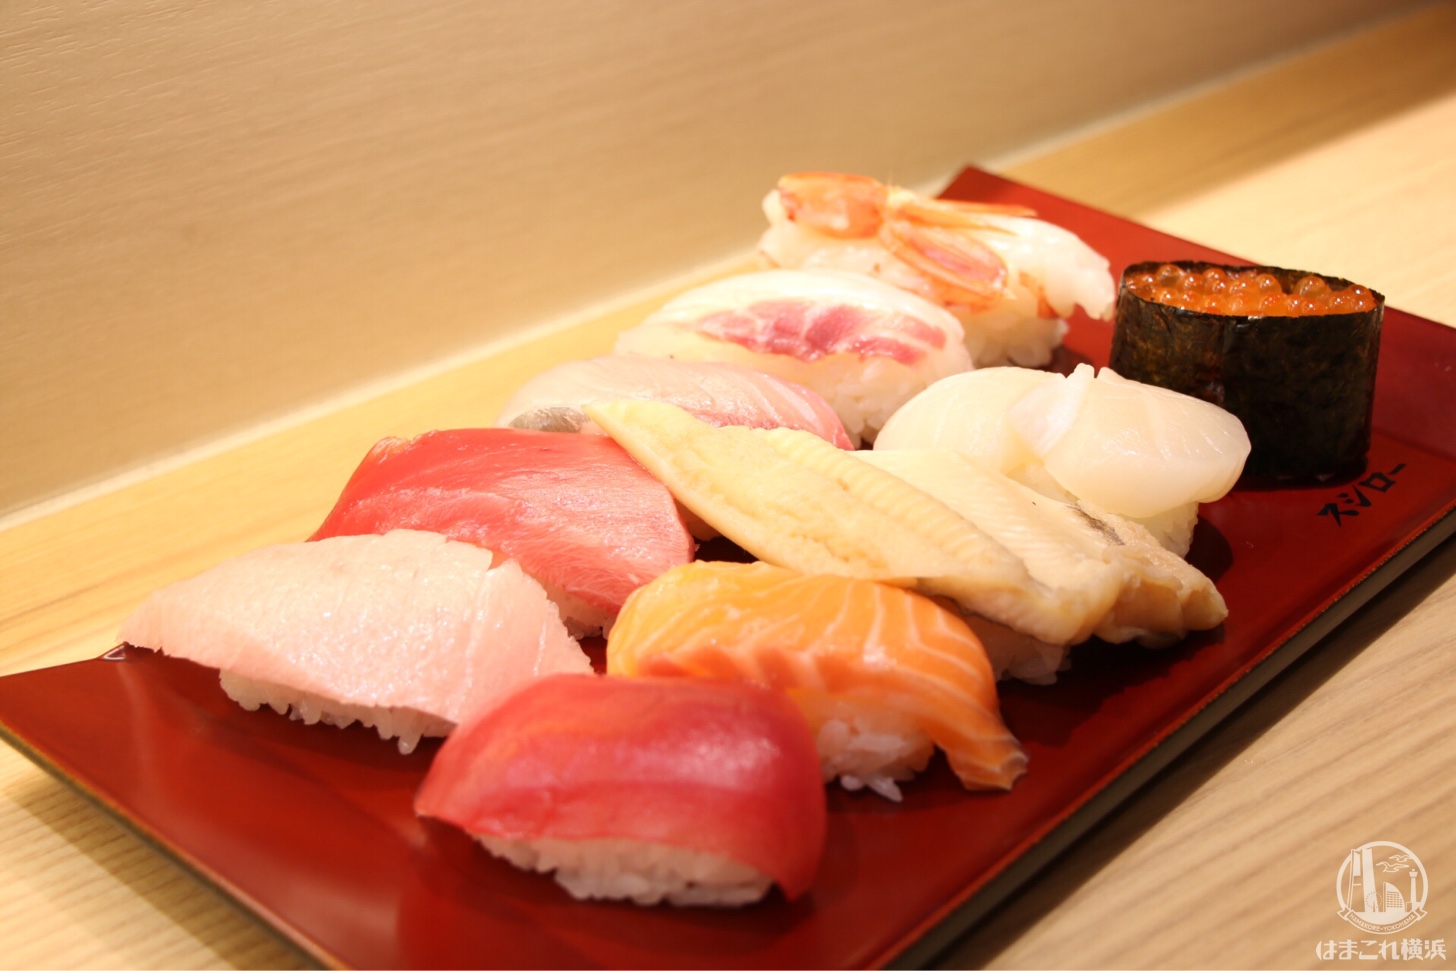 スシローコノミ 横浜の現地レポート！コノミメニューと寿司盛り合わせメニューを用意